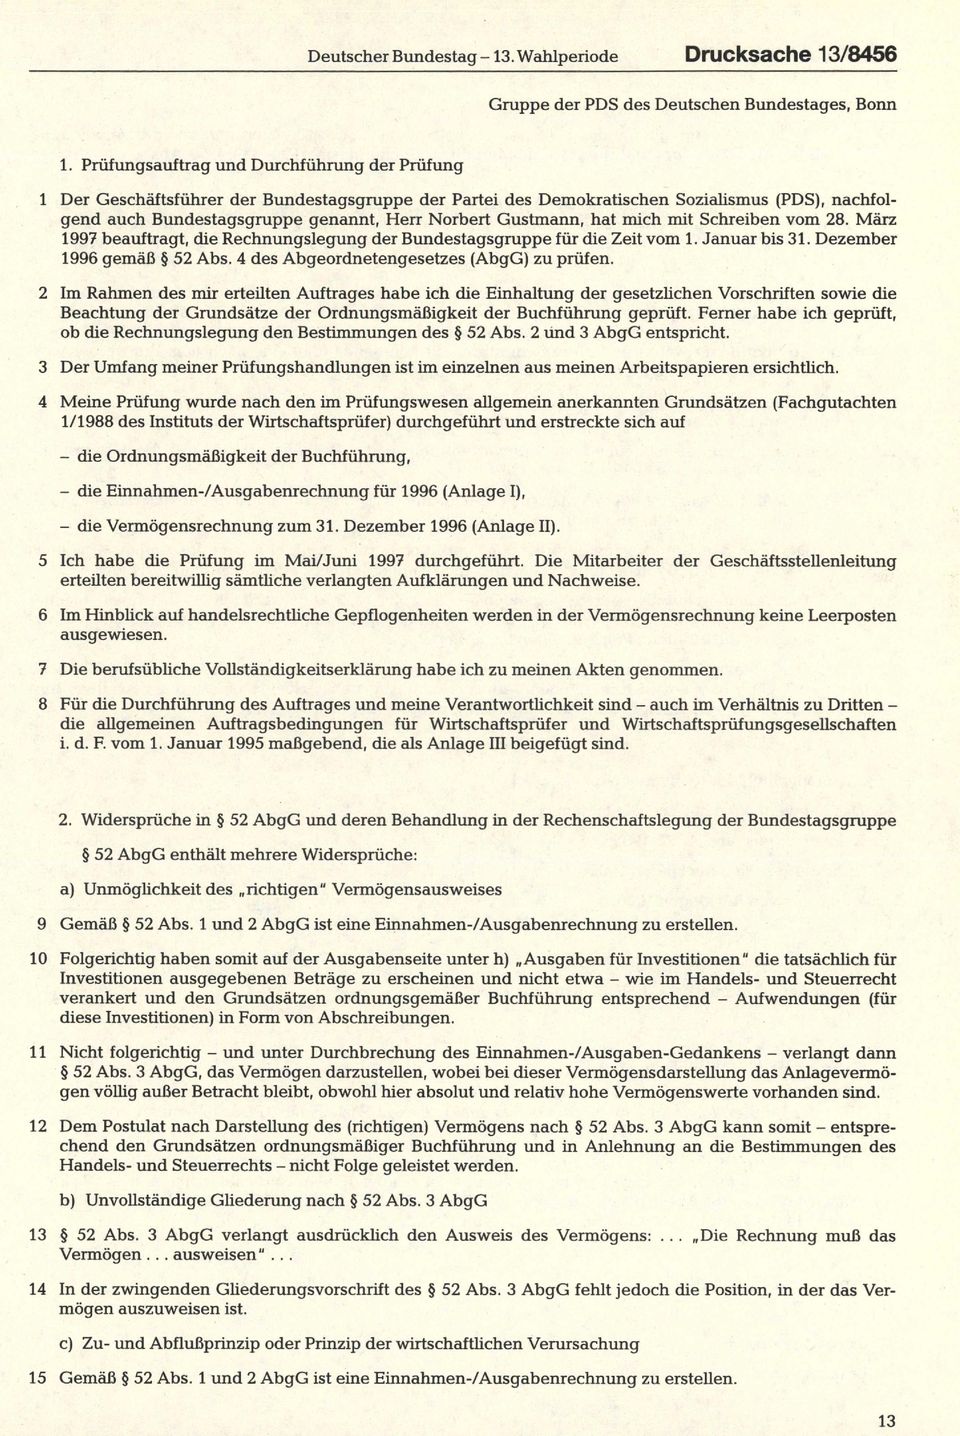 Gustmann, hat mich mit Schreiben vom 28. März 1997 beauftragt, die Rechnungslegung der Bundestagsgruppe für die Zeit vom 1. Januar bis 31. Dezember 1996 gemäß 52 Abs.